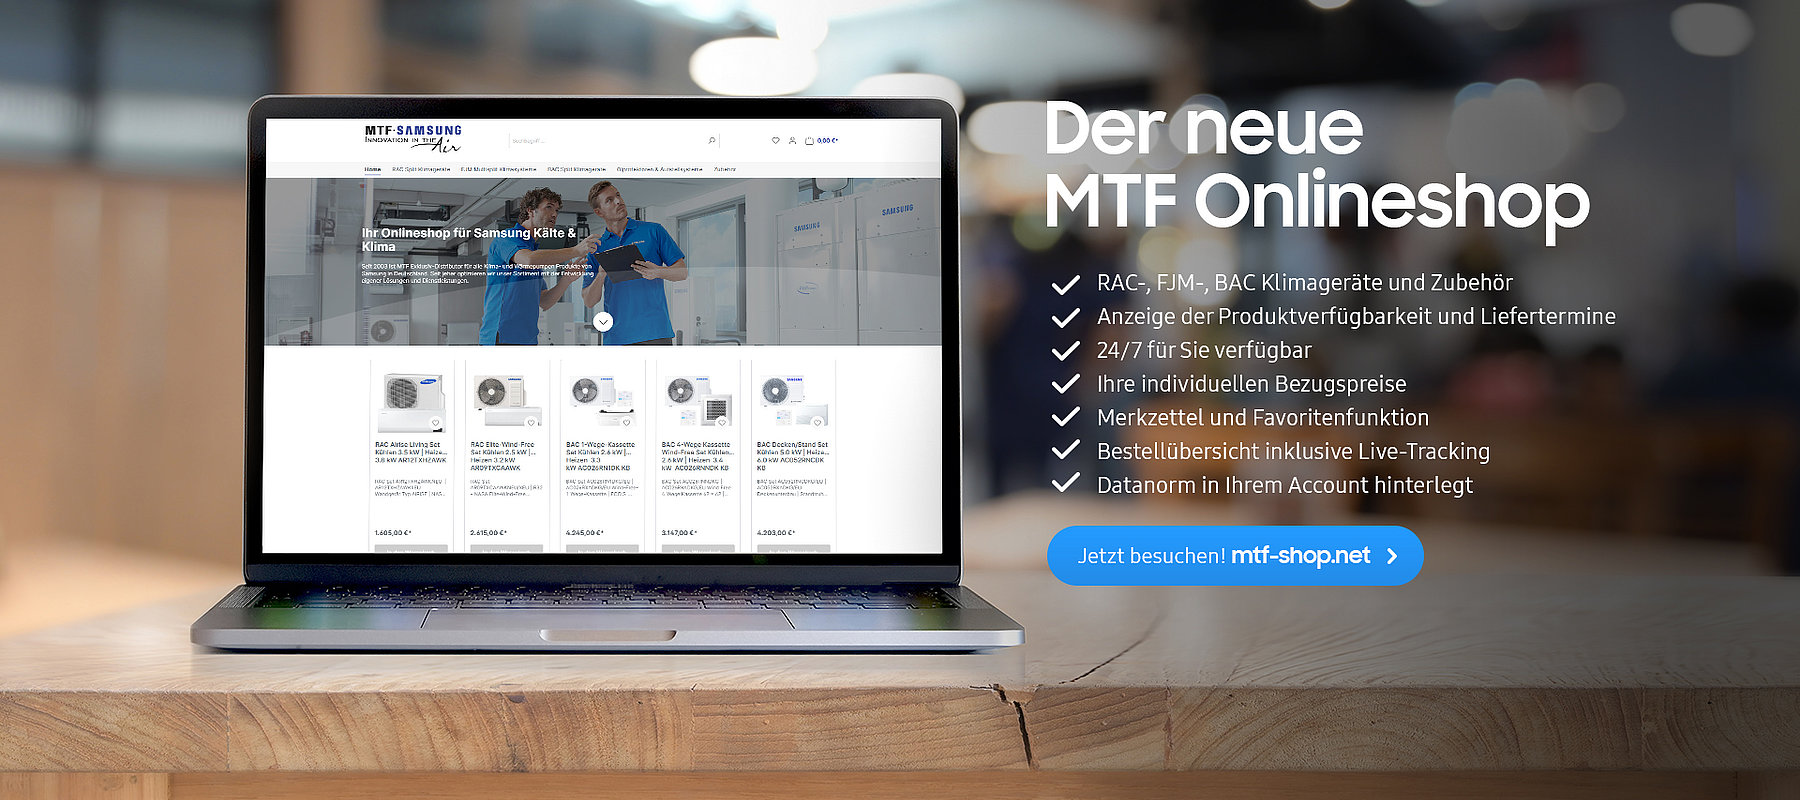 Der neue MTF Onlineshop